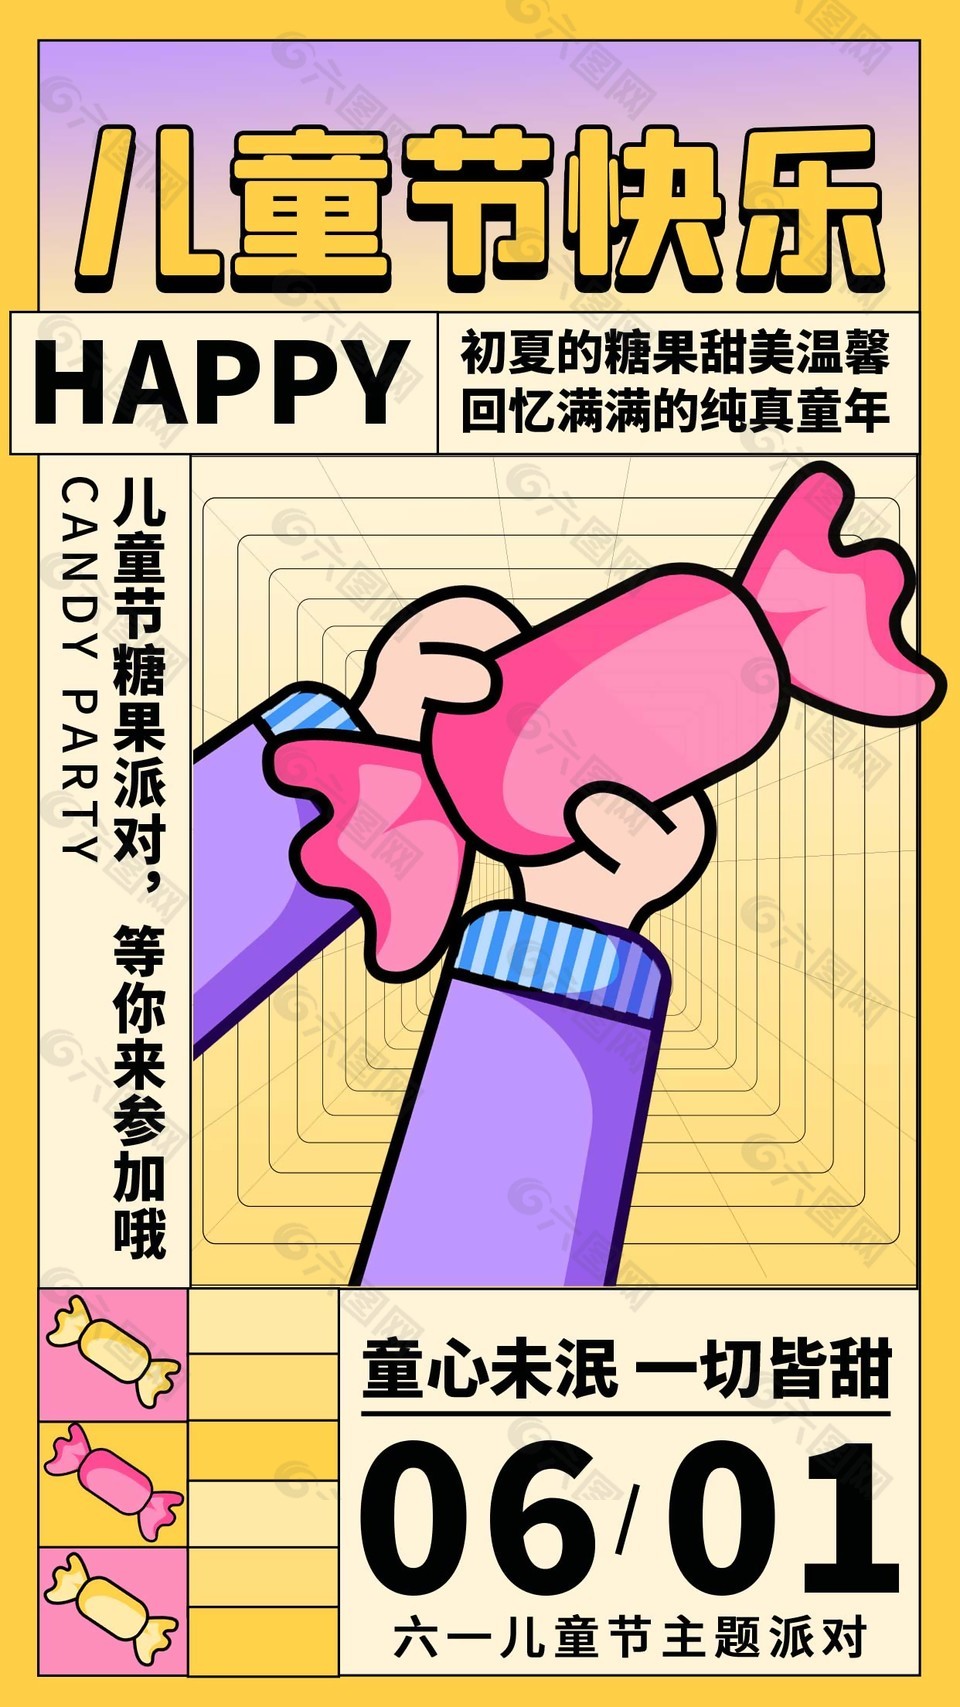 儿童节快乐甜蜜糖果卡通海报素材下载